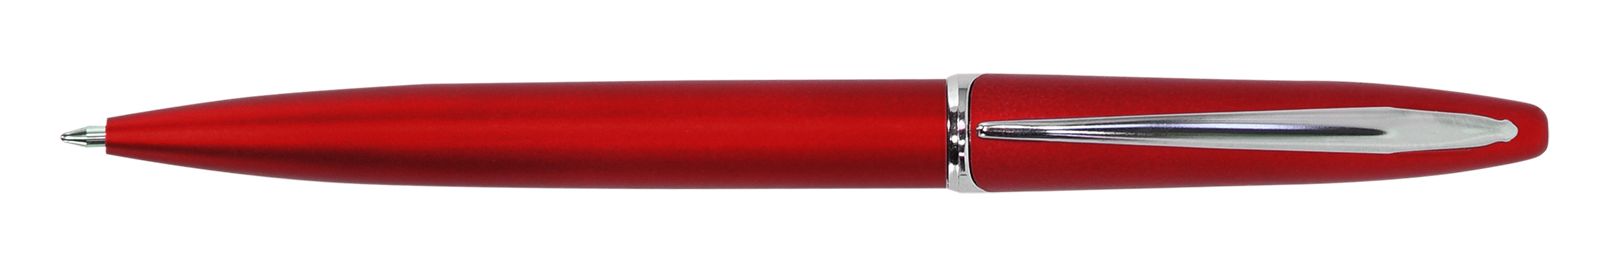 Ручка для логотипа шариковая автоматическая INFORMAT INSPIRATION 0,7 мм, синяя, красный корпус